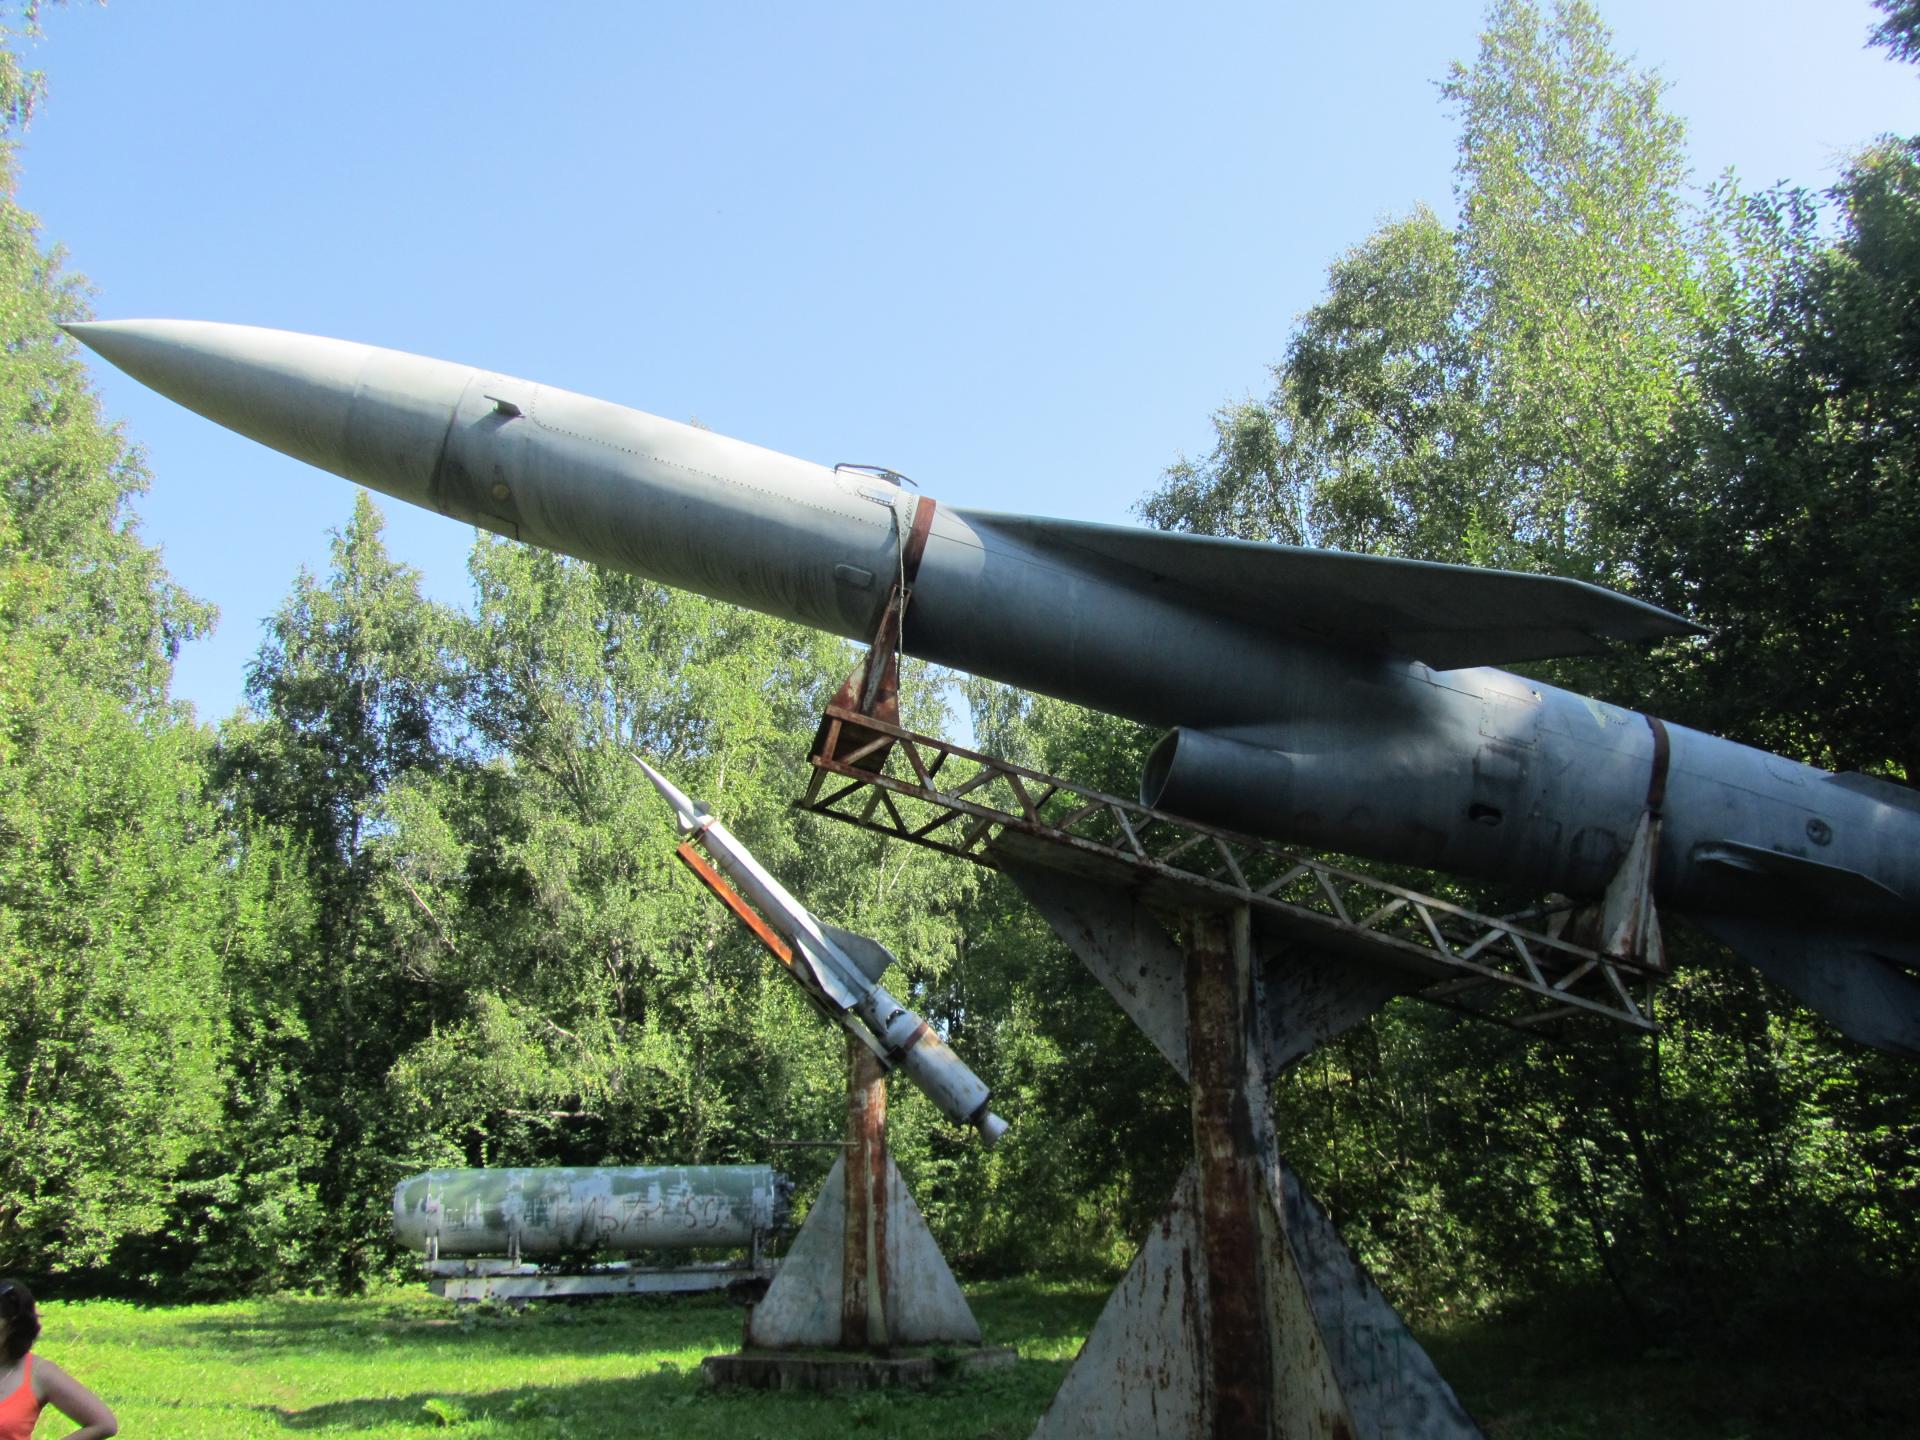 Raketa predstavuje muzeálny kúsok, ktorý sa dnes vystavuje pri ukážke dejín vojenstva.